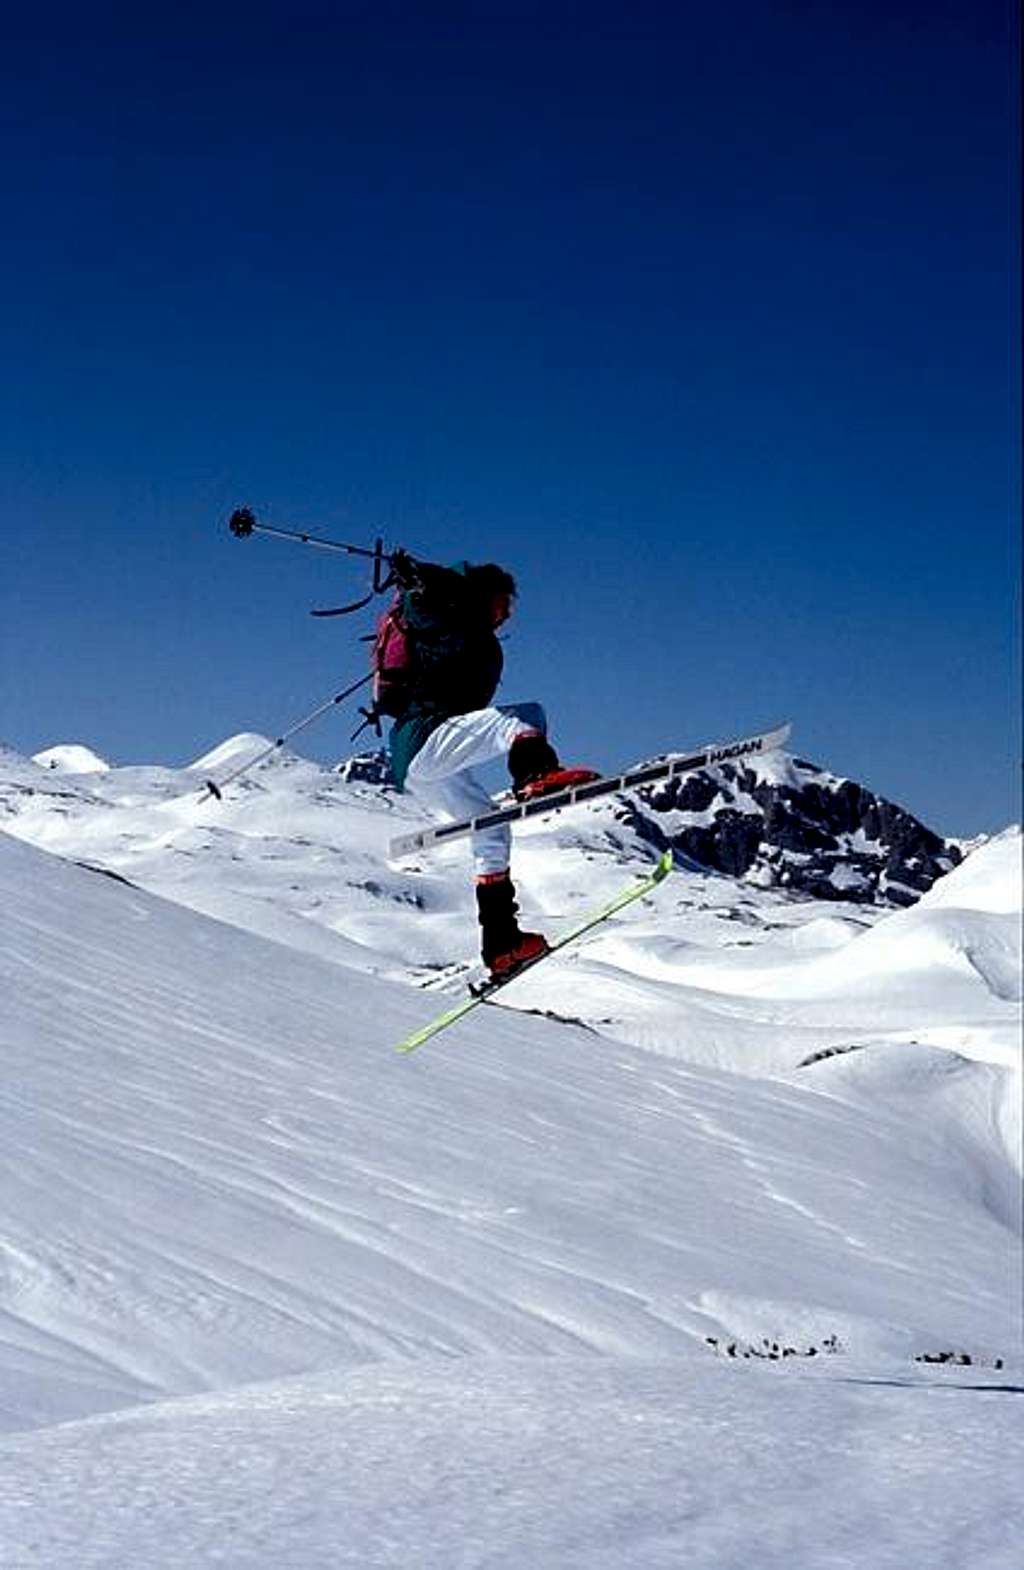 Skiing fun on...